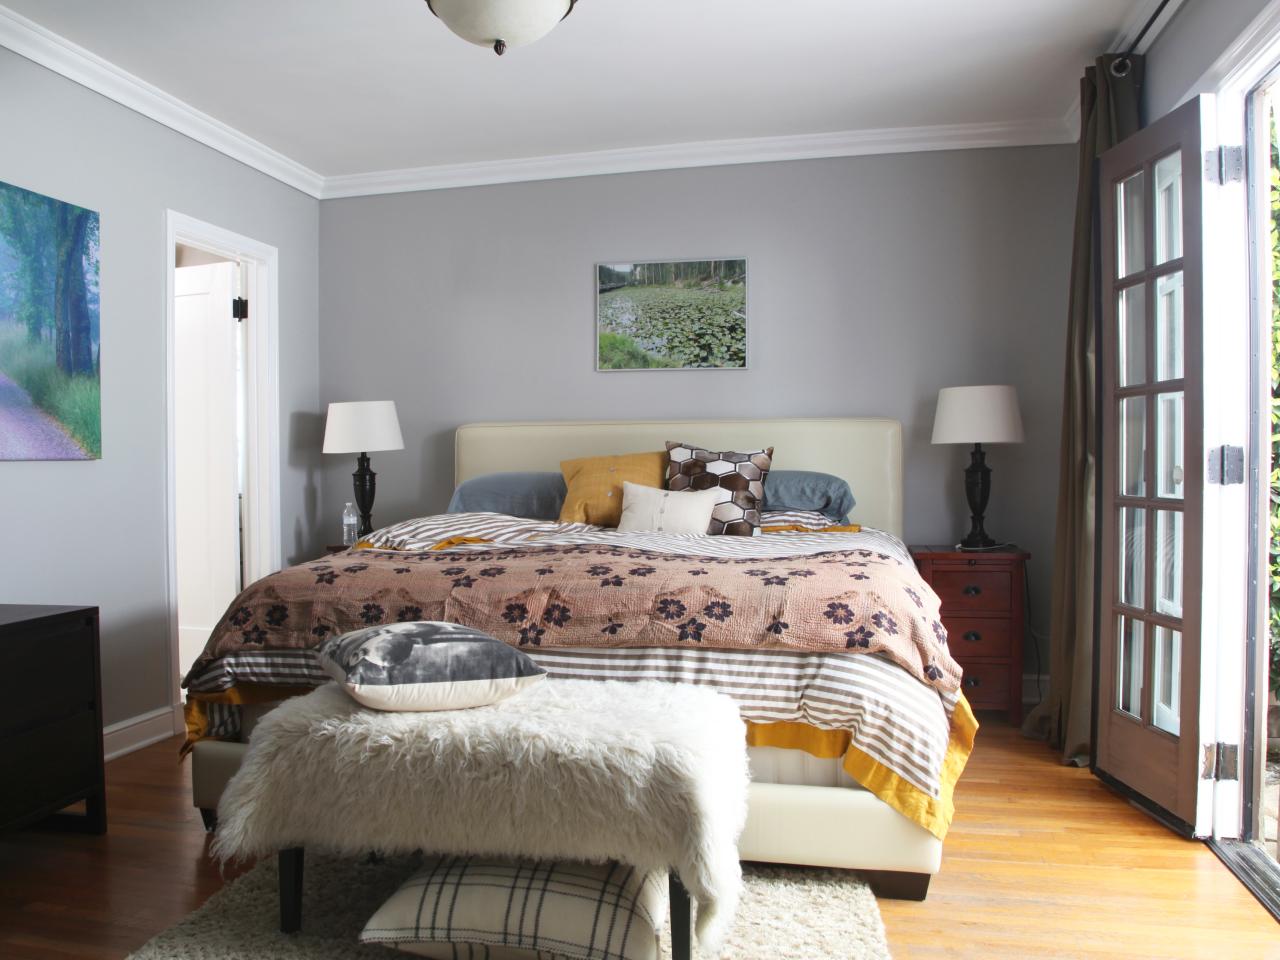 Gray Master Bedrooms Ideas  HGTV